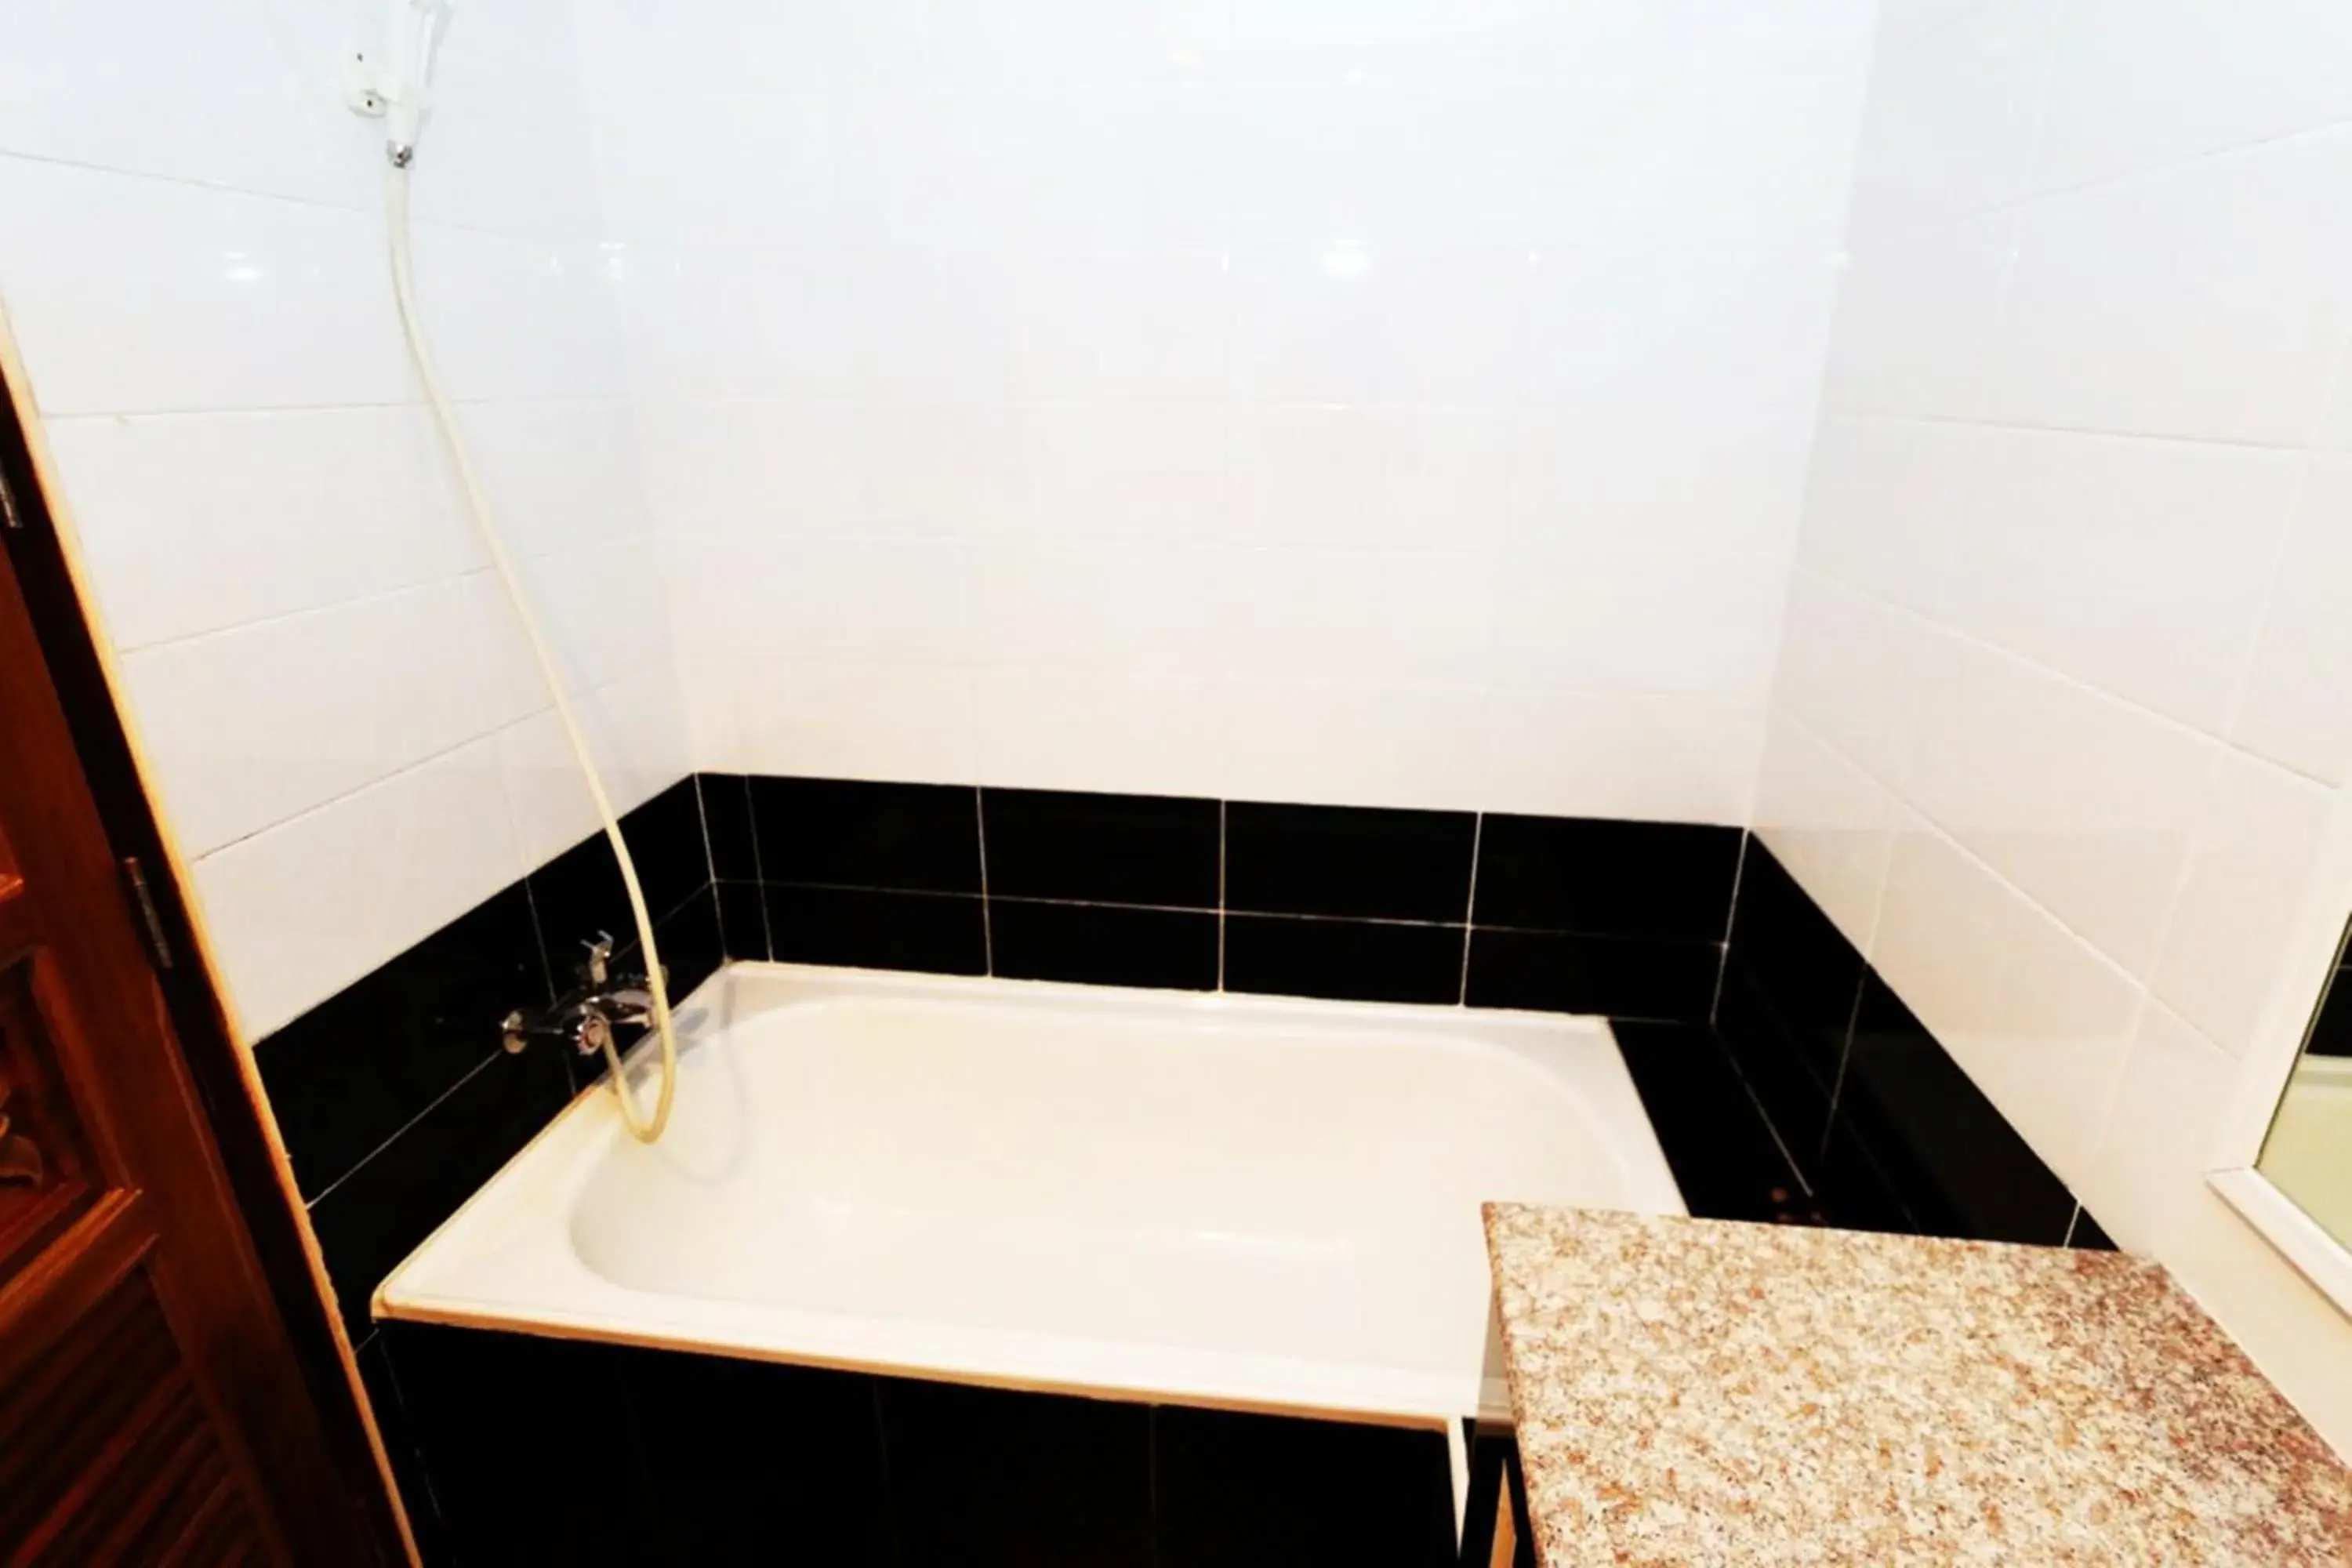 Shower, Bathroom in T3 Residence